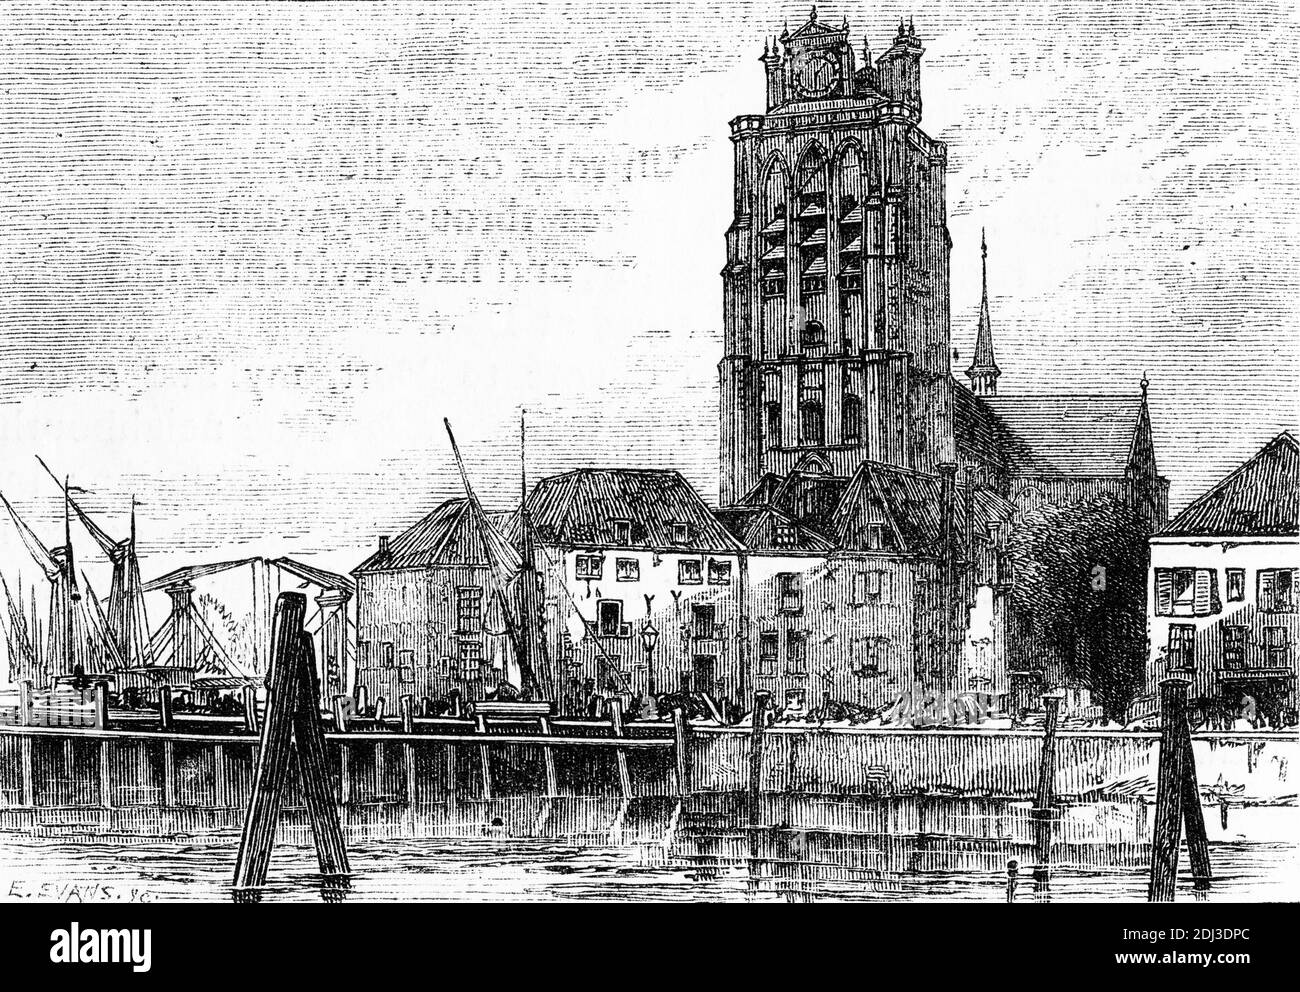 Incisione della cattedrale nella città di Dordescht, storicamente conosciuta in inglese come Dordt o Dort, città e comune dei Paesi Bassi occidentali, situata nella provincia dell'Olanda del Sud. Foto Stock